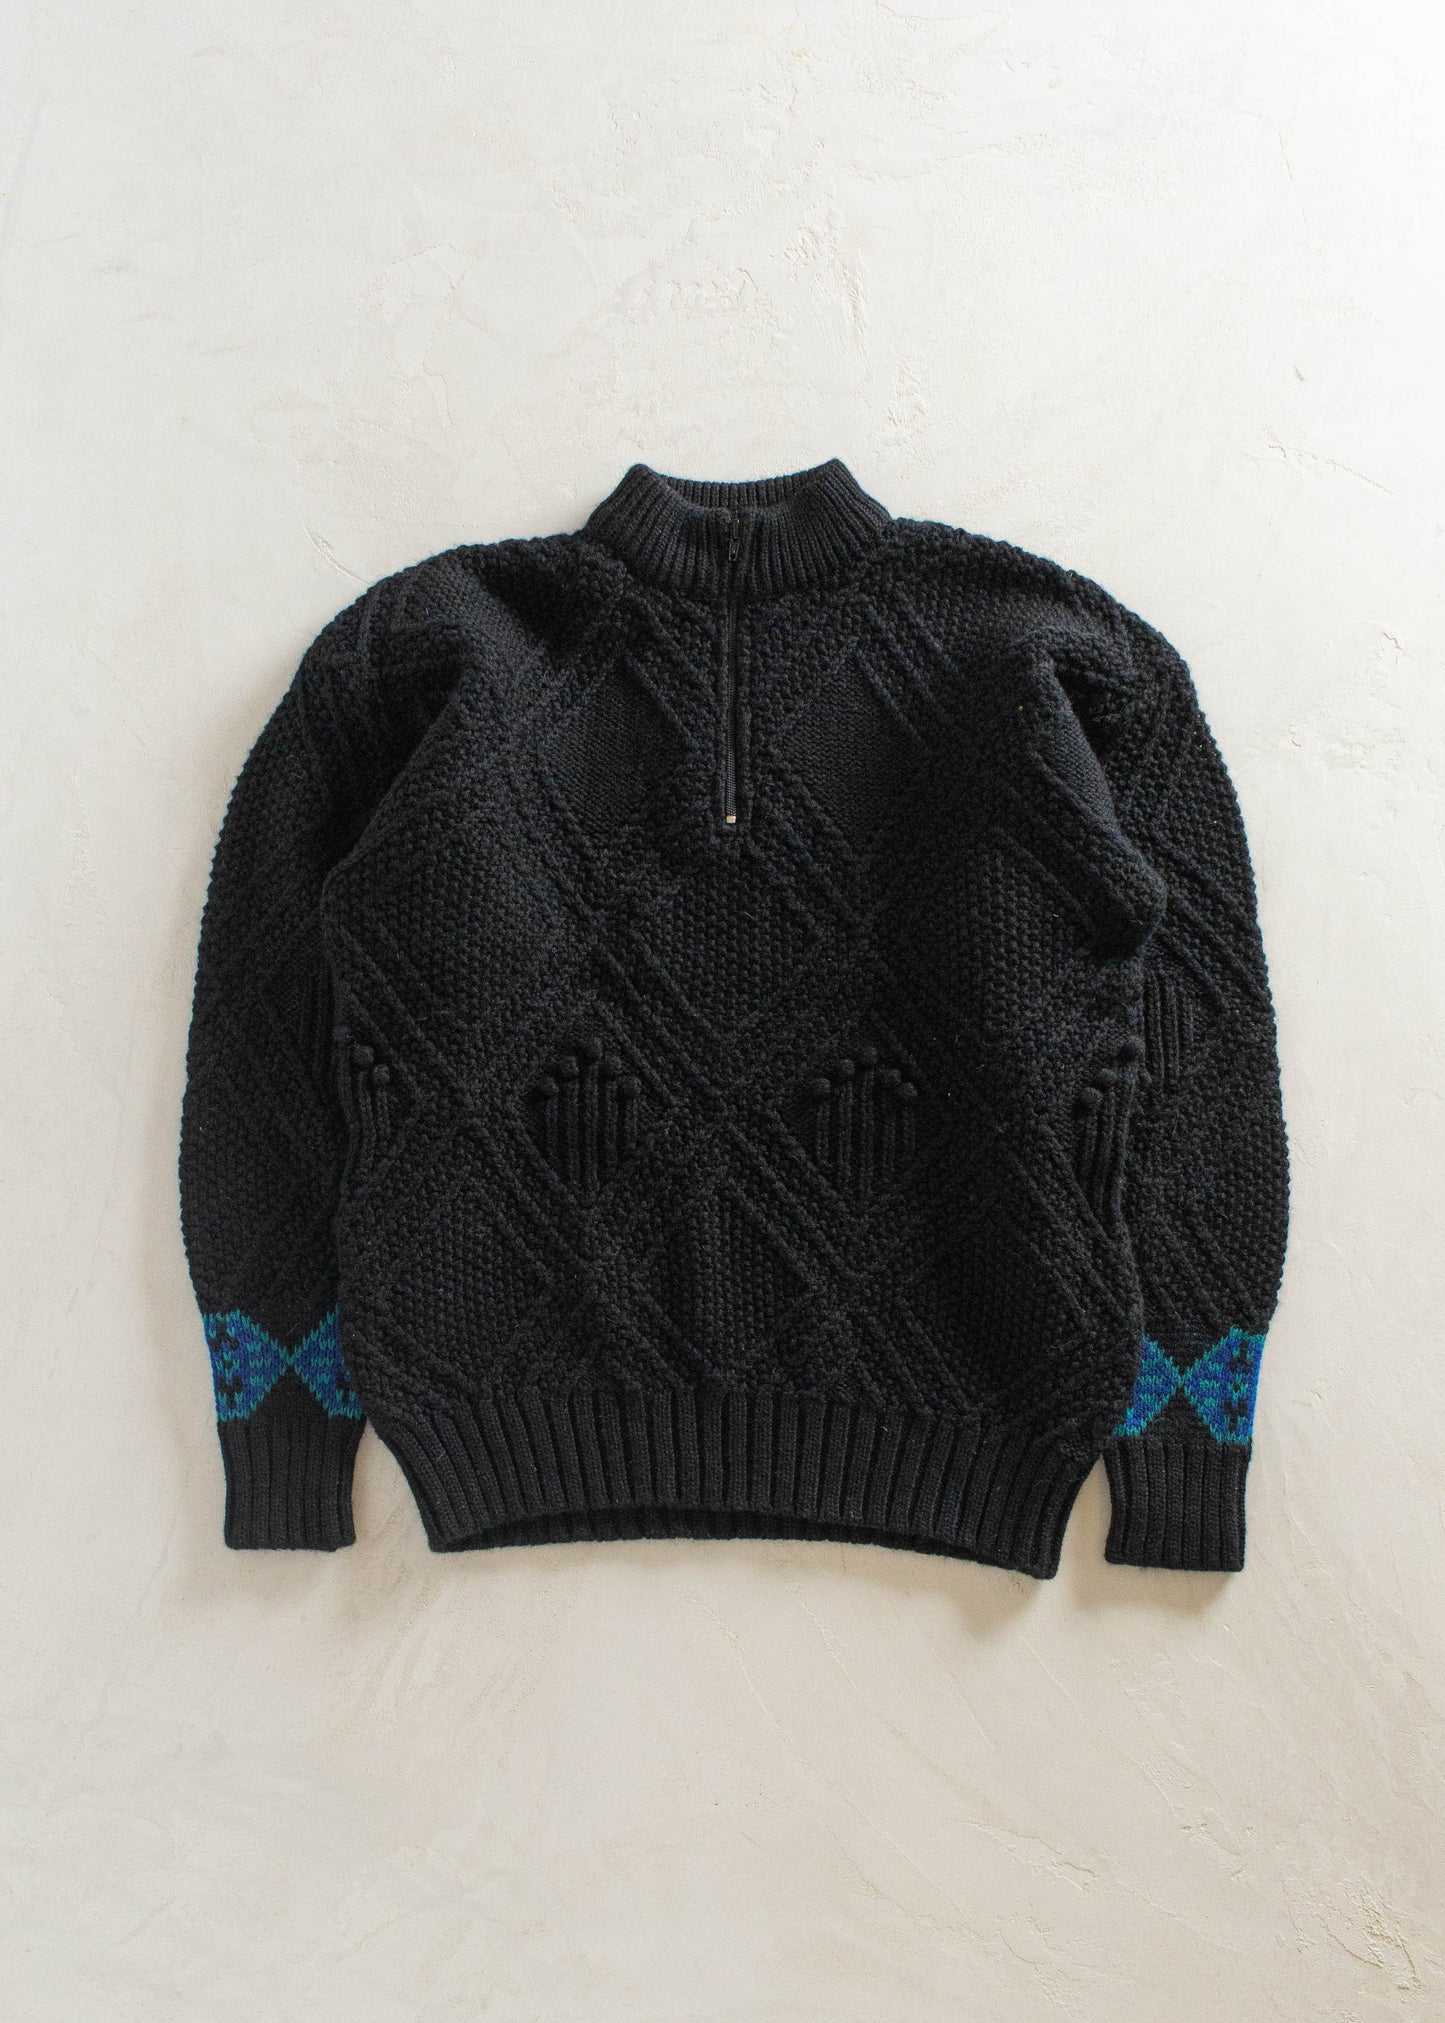 1980s Eddie Bauer Wool Pullover Sweater Size XL/2XL